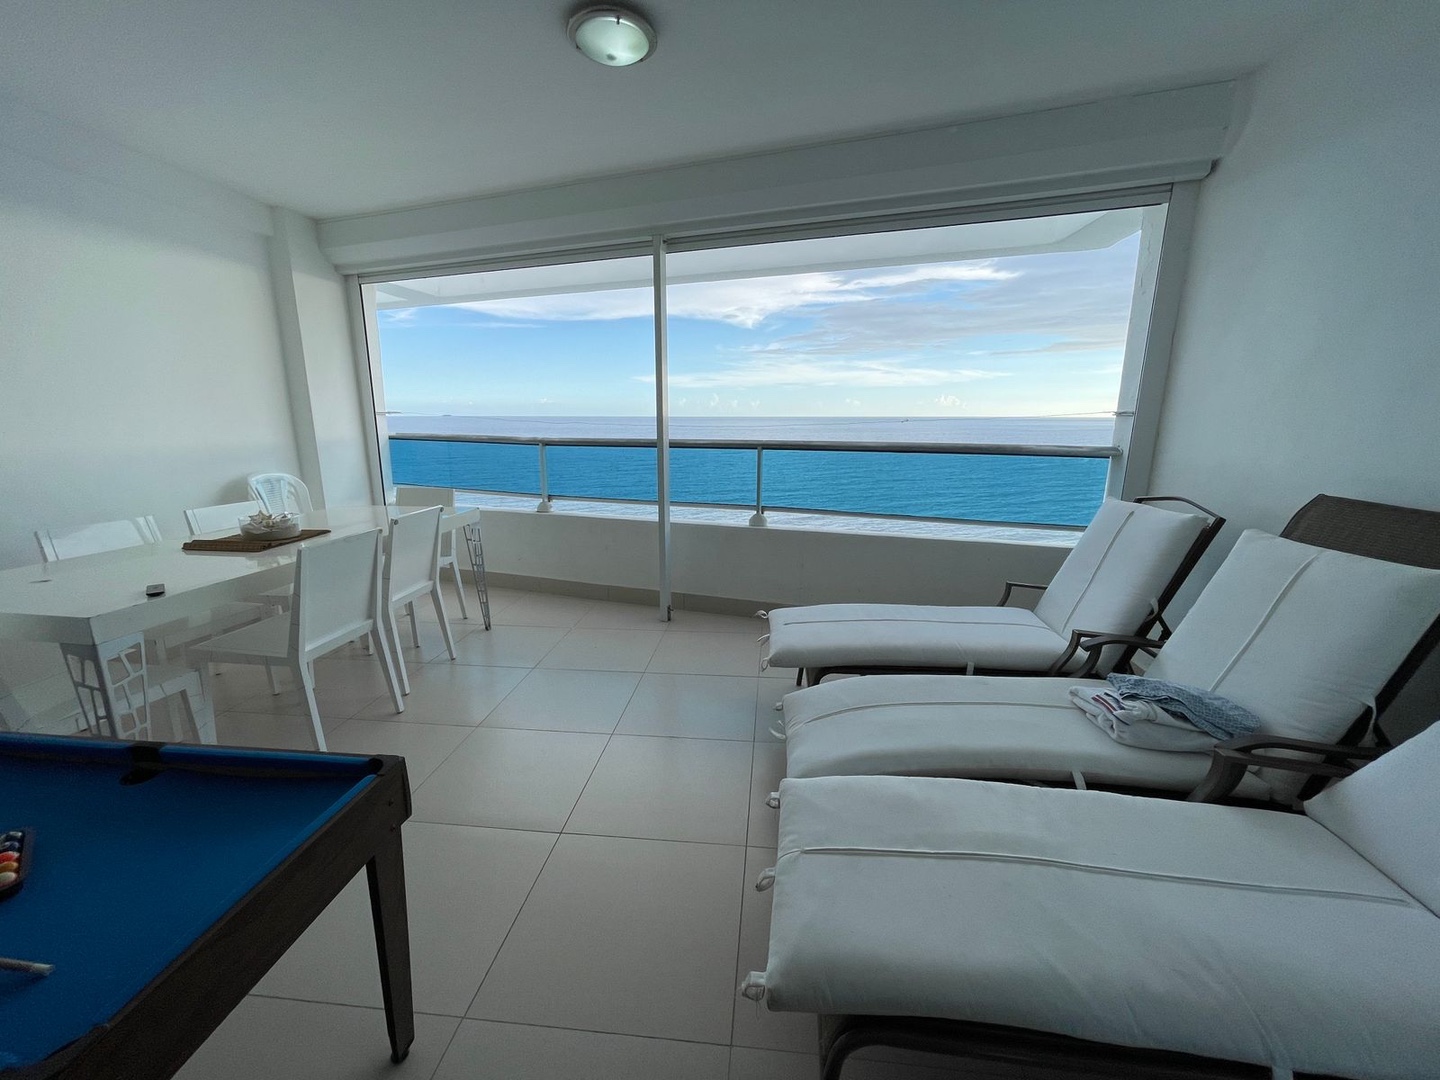 apartamentos - Venta d apartamento en Juan dolio piso 16 con vista al mar zona turística  3